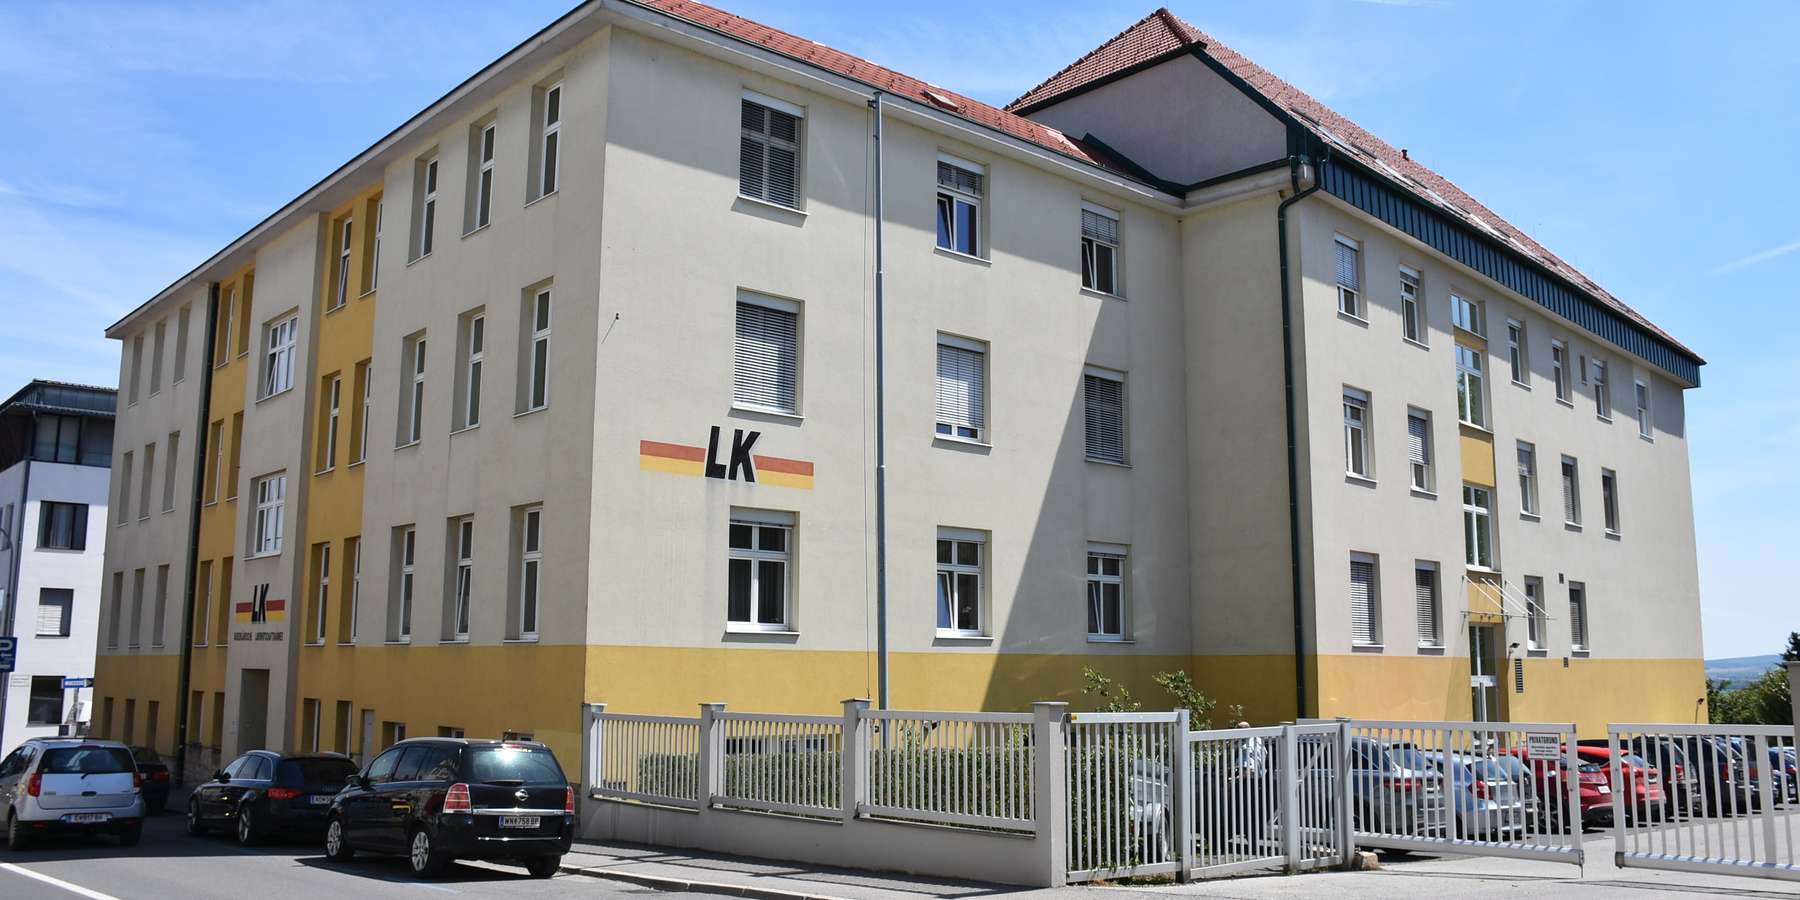 Landwirtschaftskammer-Burgenland-Fassade.jpg